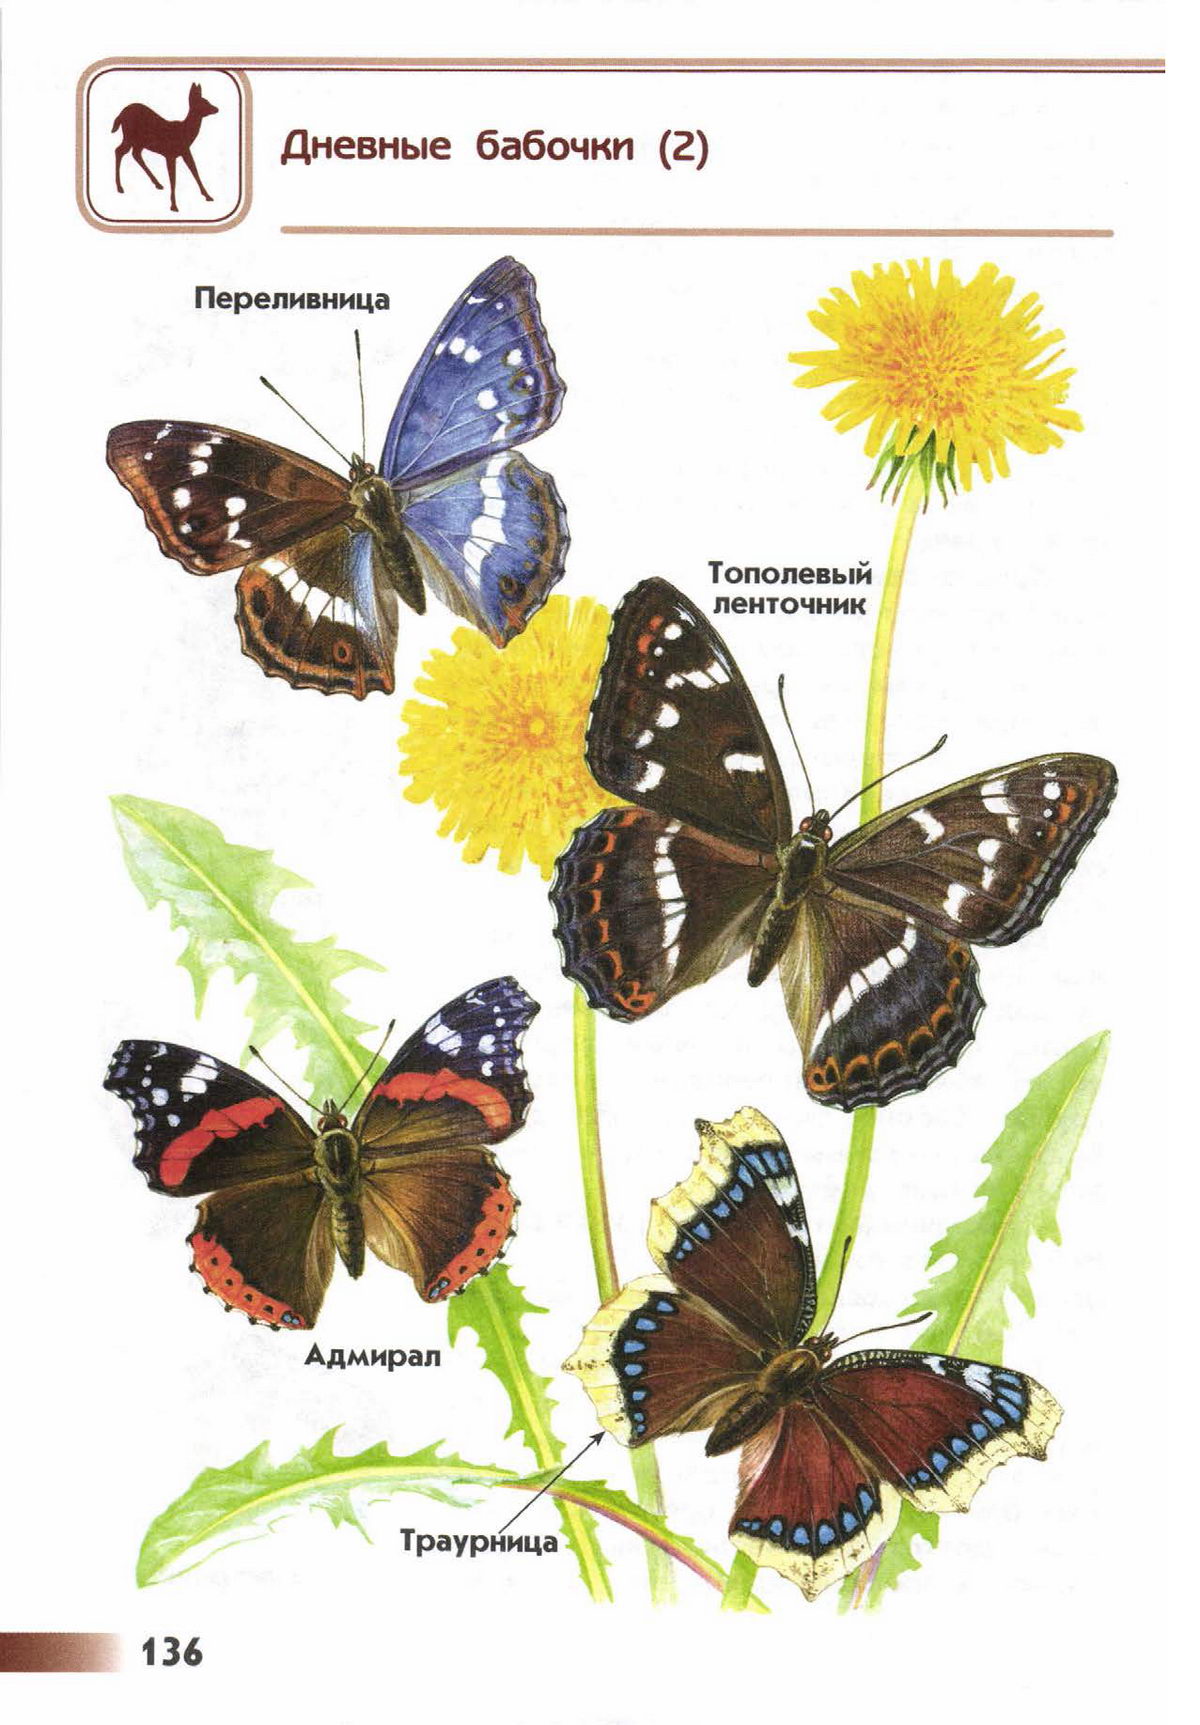 Названия бабочек с фото по окружающему миру 1 класс